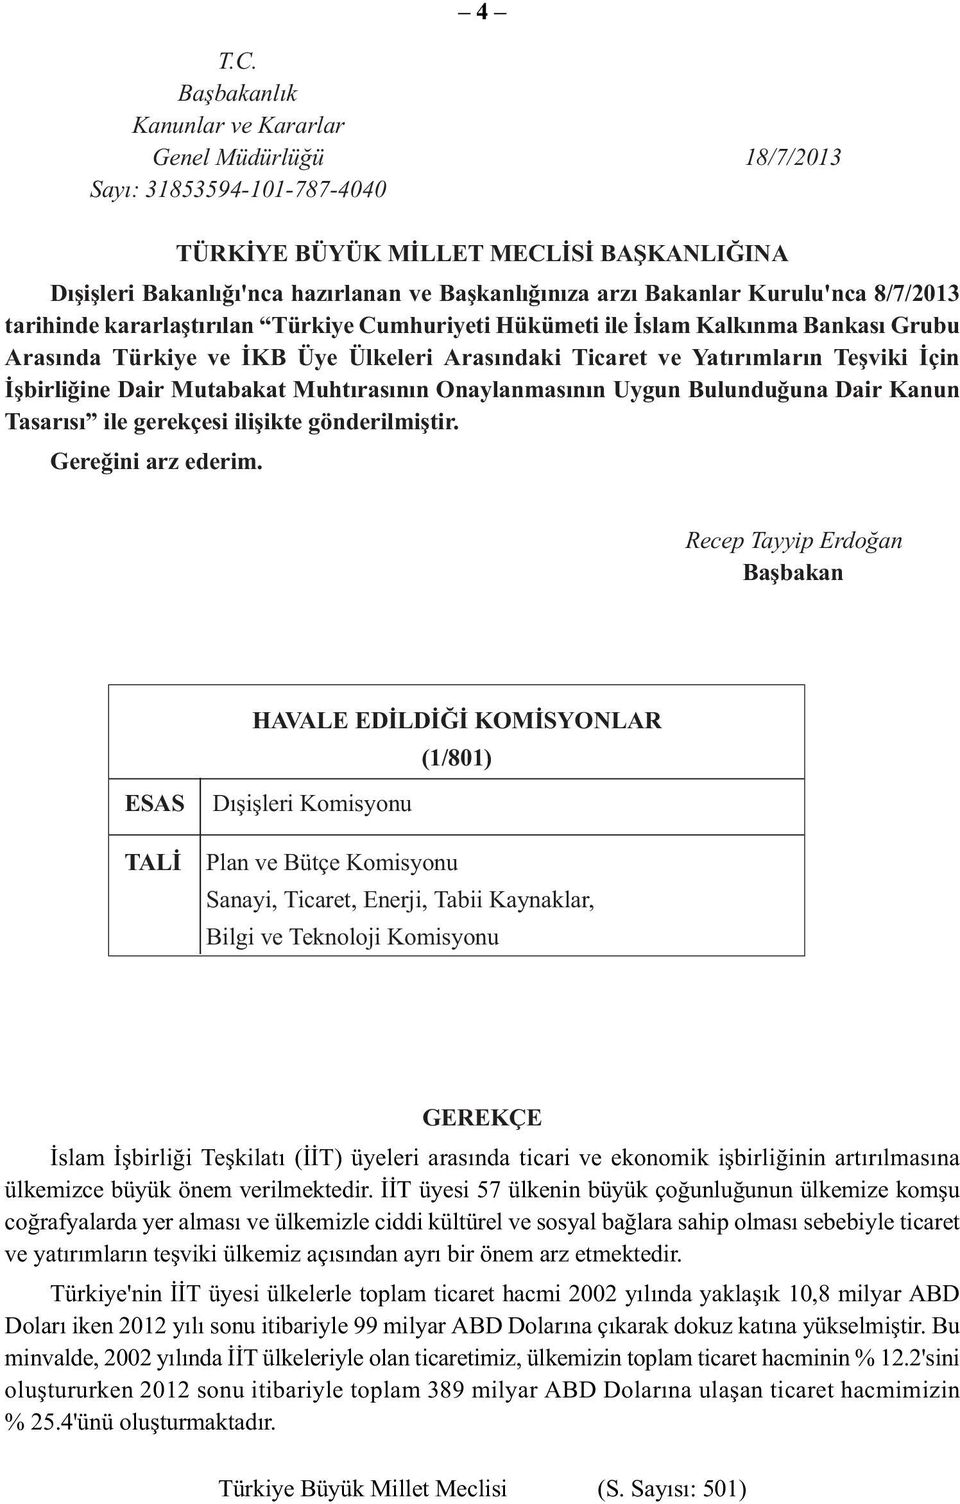 Kurulu'nca 8/7/2013 tarihinde kararlaştırılan Türkiye Cumhuriyeti Hükümeti ile İslam Kalkınma Bankası Grubu Arasında Türkiye ve İKB Üye Ülkeleri Arasındaki Ticaret ve Yatırımların Teşviki İçin